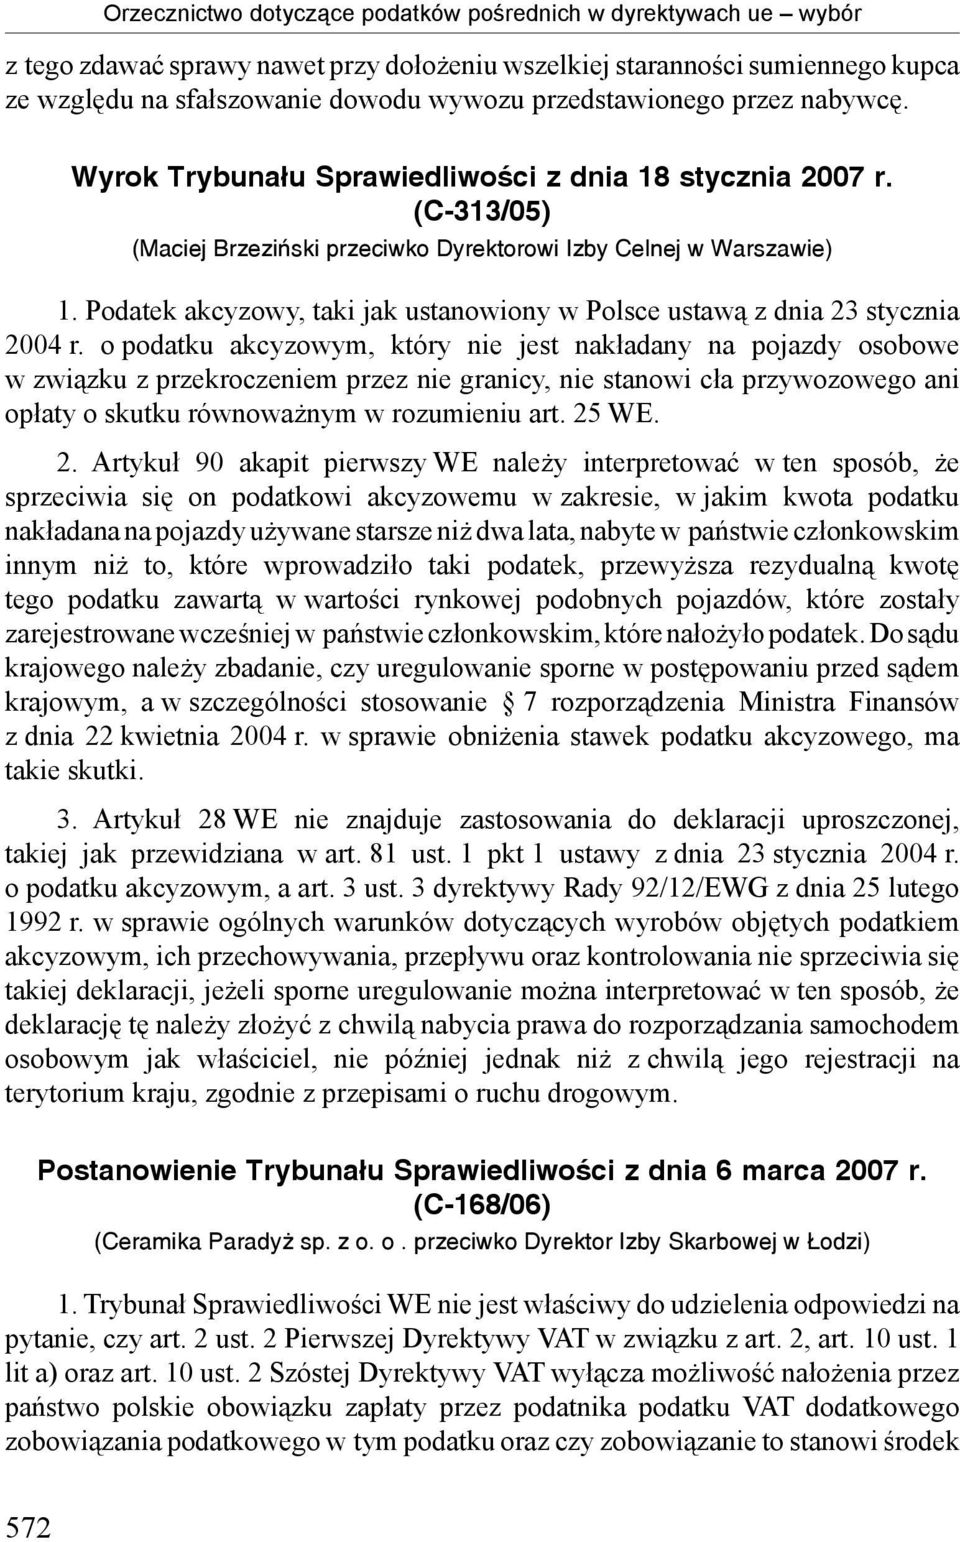 Podatek akcyzowy, taki jak ustanowiony w Polsce ustawą z dnia 23 stycznia 2004 r.